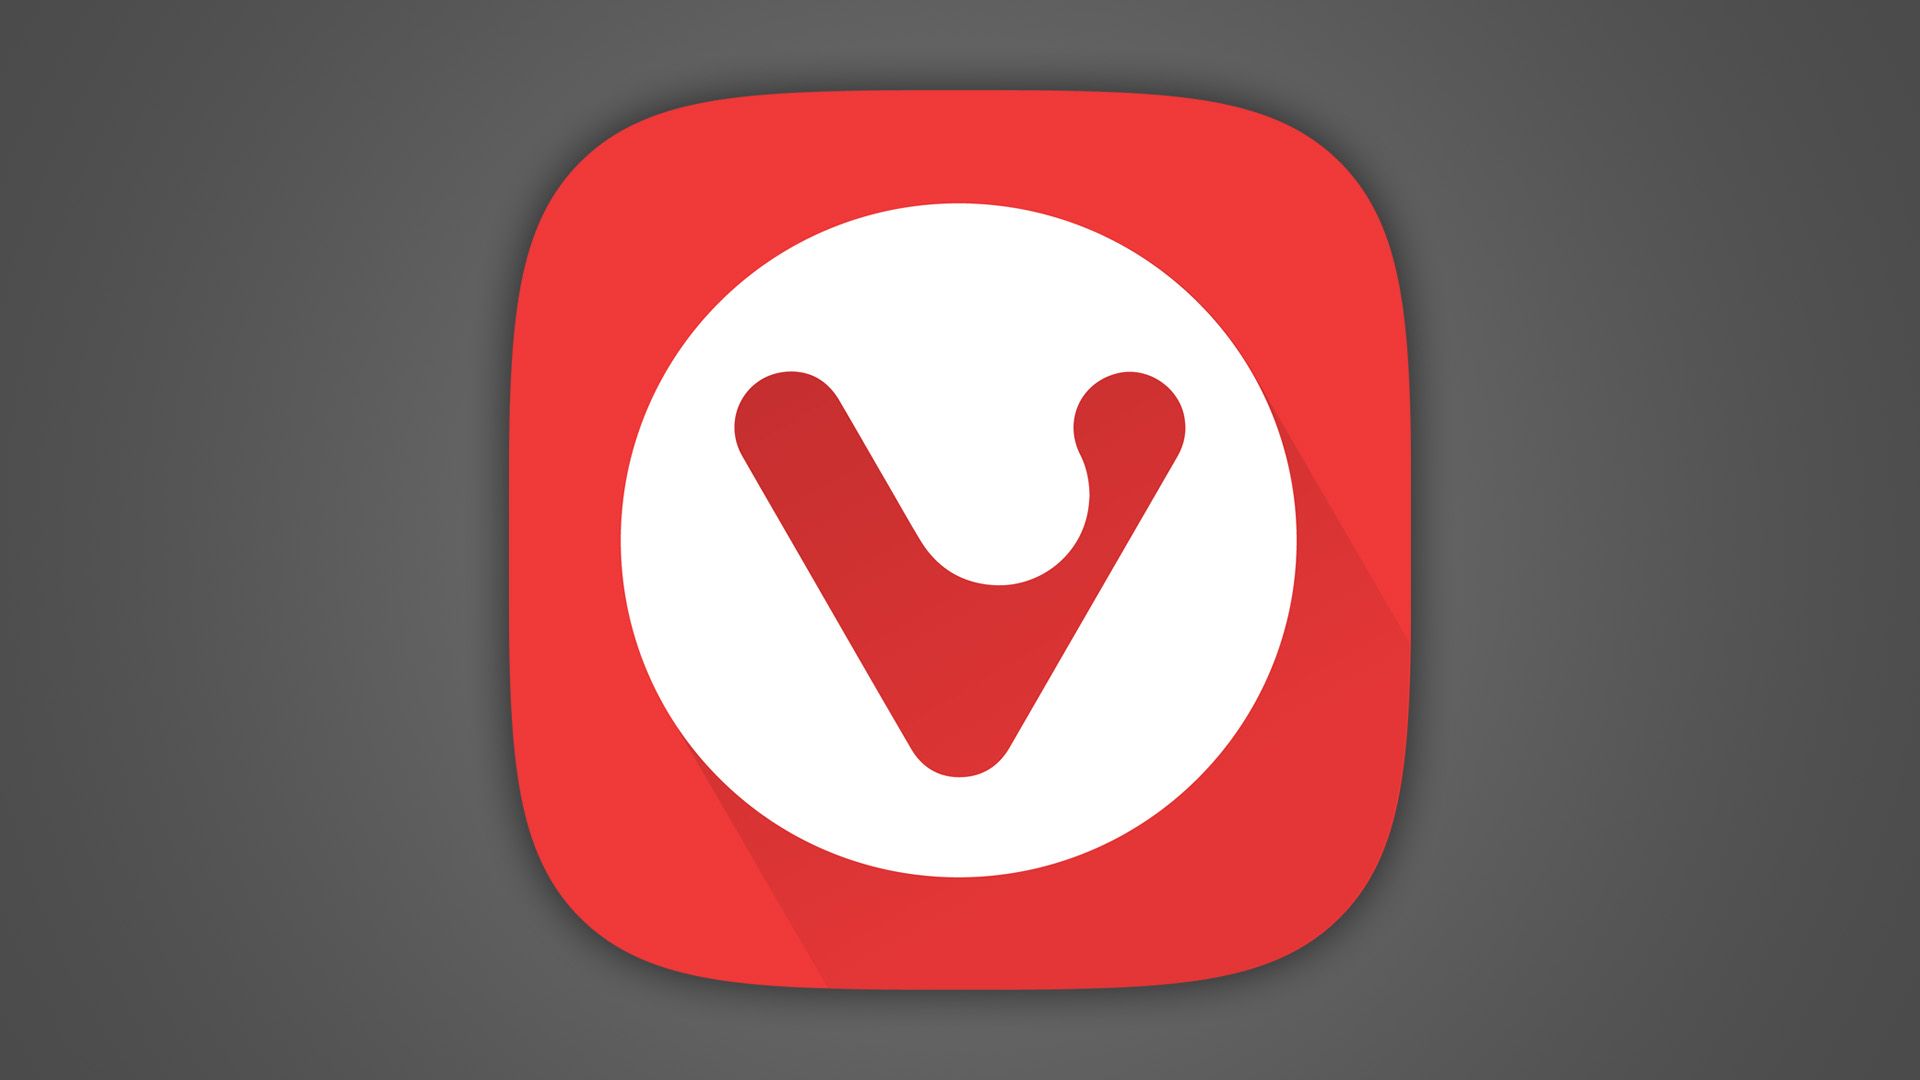 Logotipo de Vivaldi